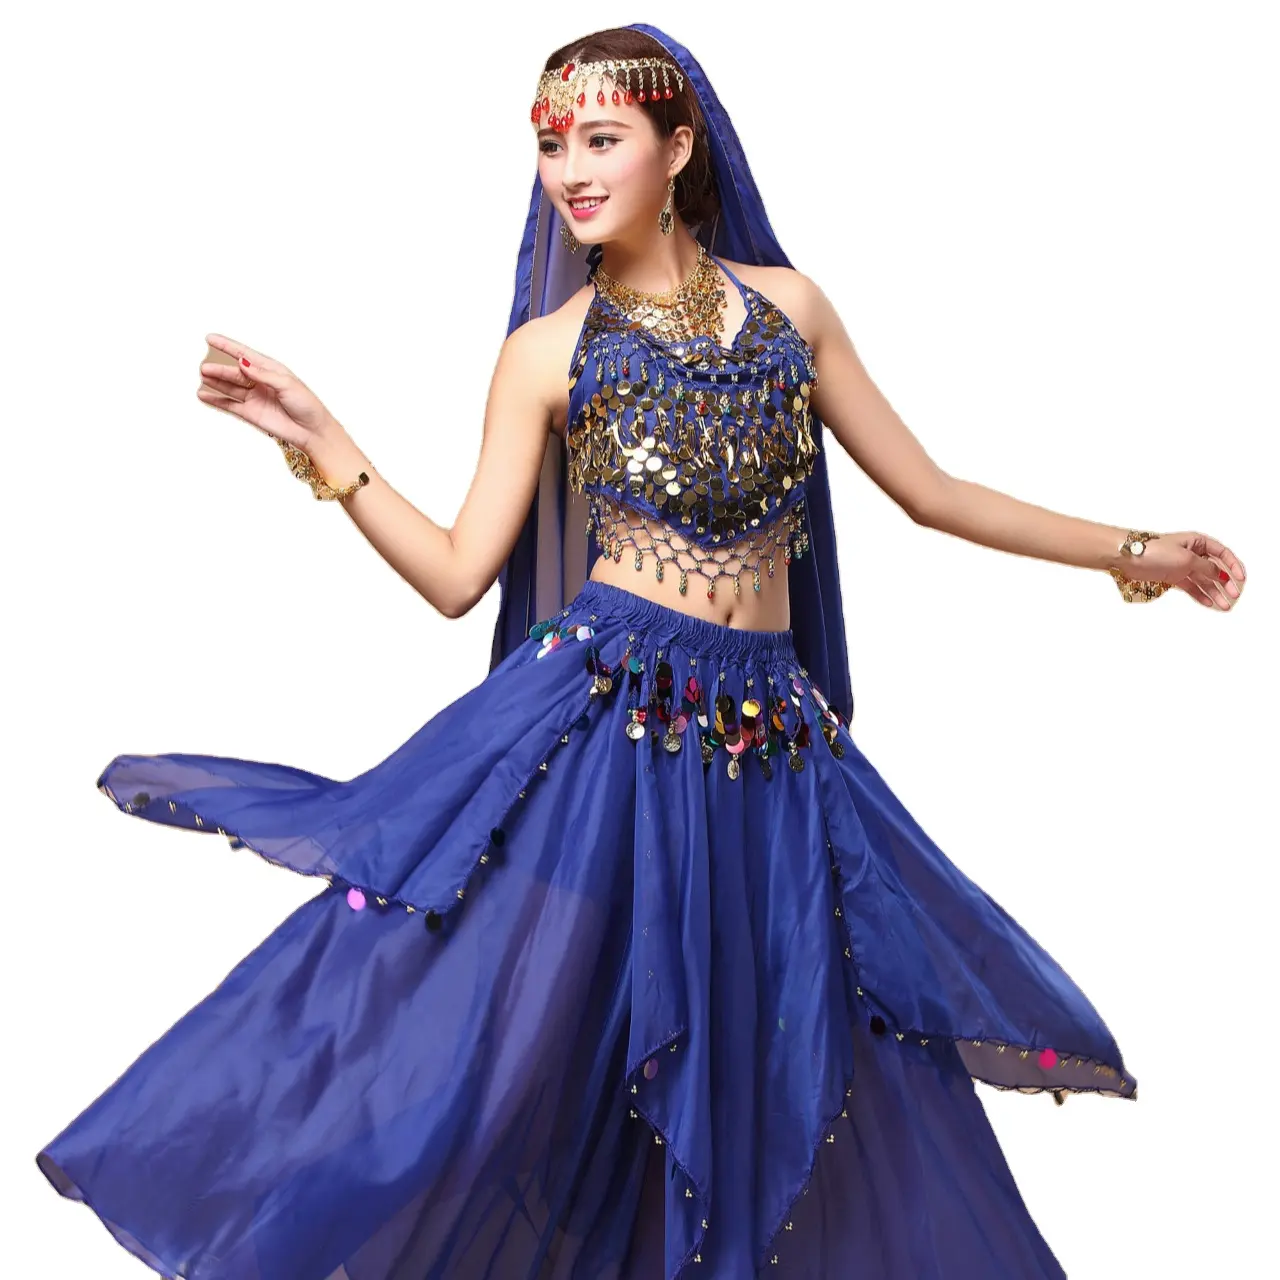 Chinesische orientalische Bauchtanz Kleid geschichtet Lotus blatt Rock Performance Wear